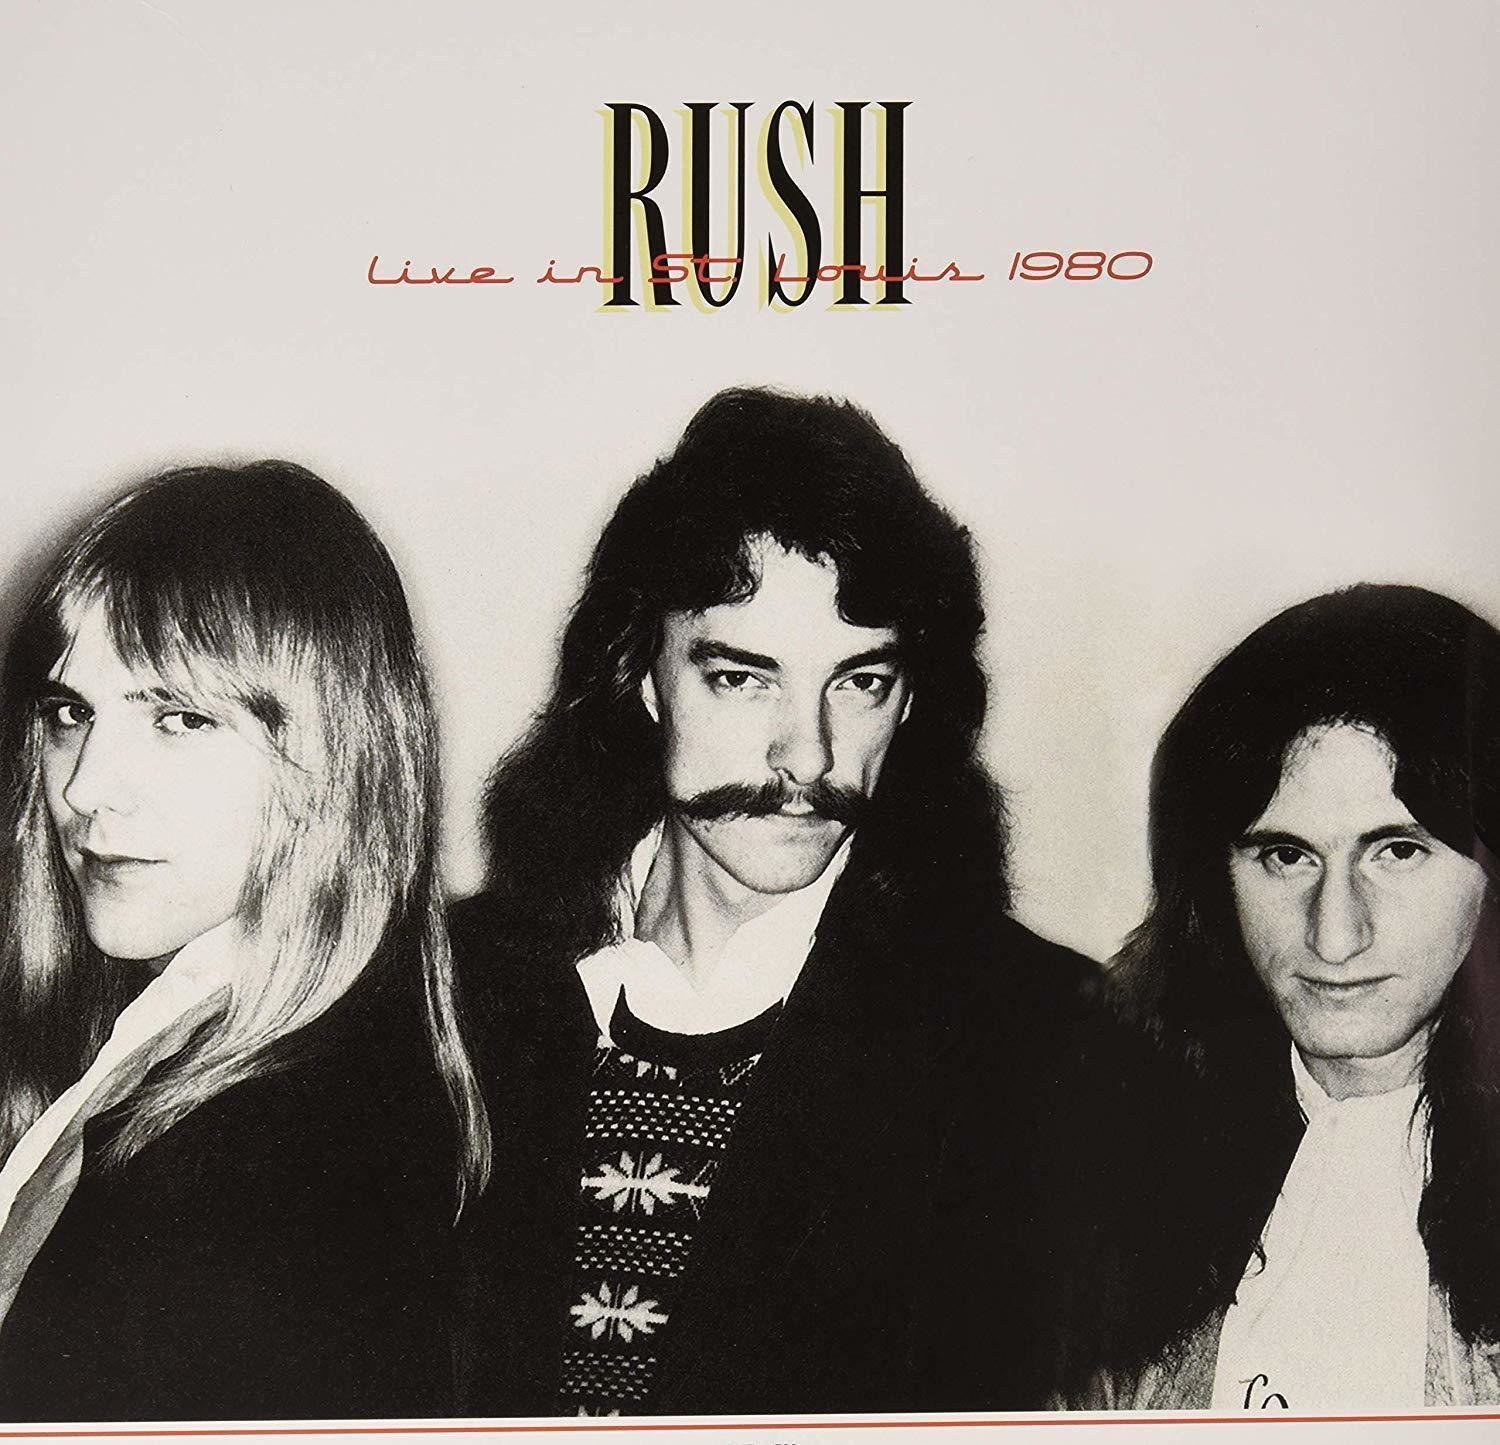 LP Rush - Live In St. Louis 1980 (2 LP)